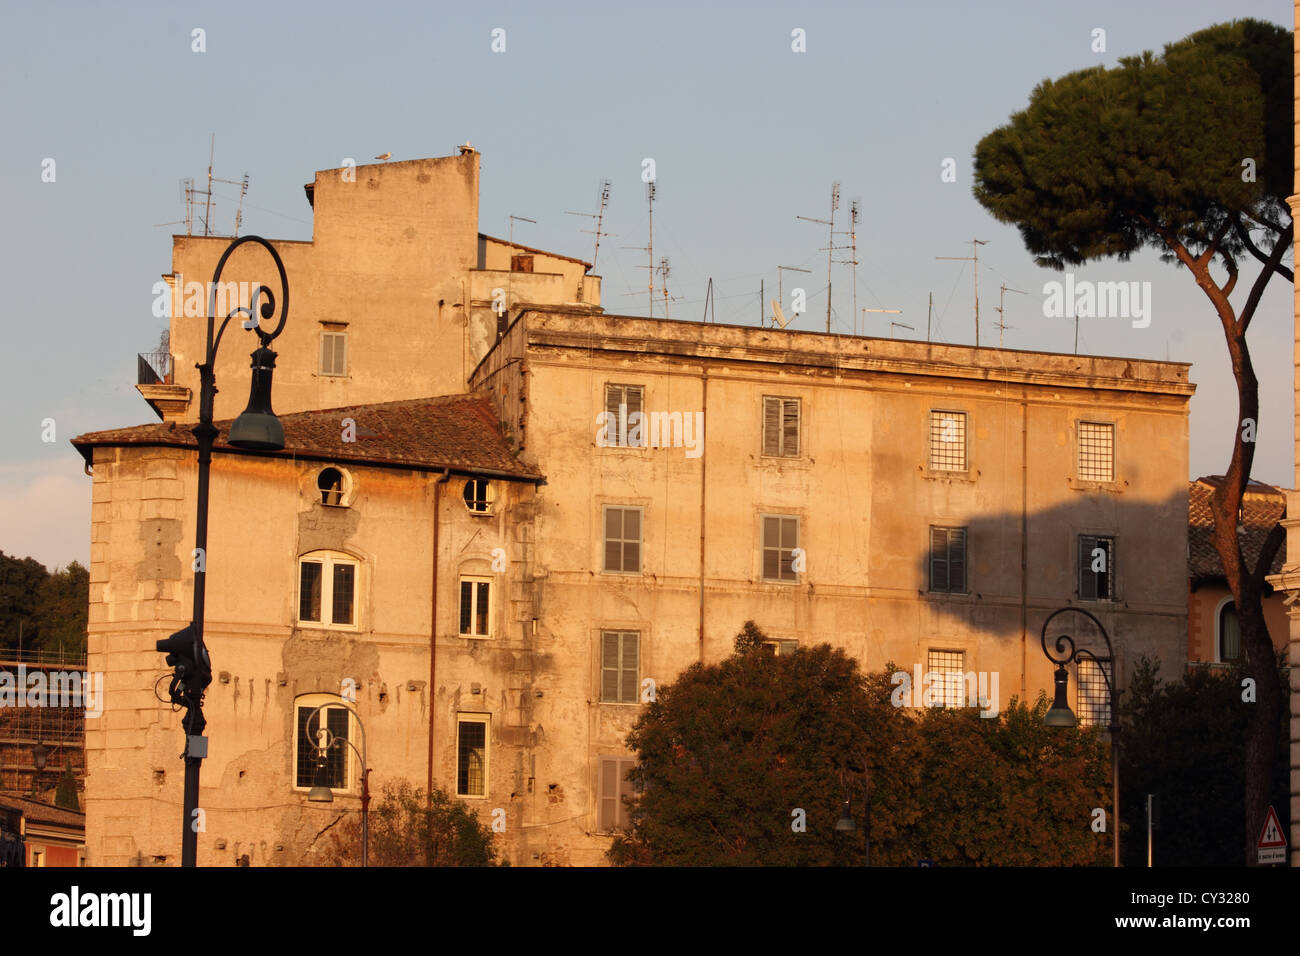 Un bel vecchio edificio romano del centro di Roma, Italia, viaggi photoarkive Foto Stock